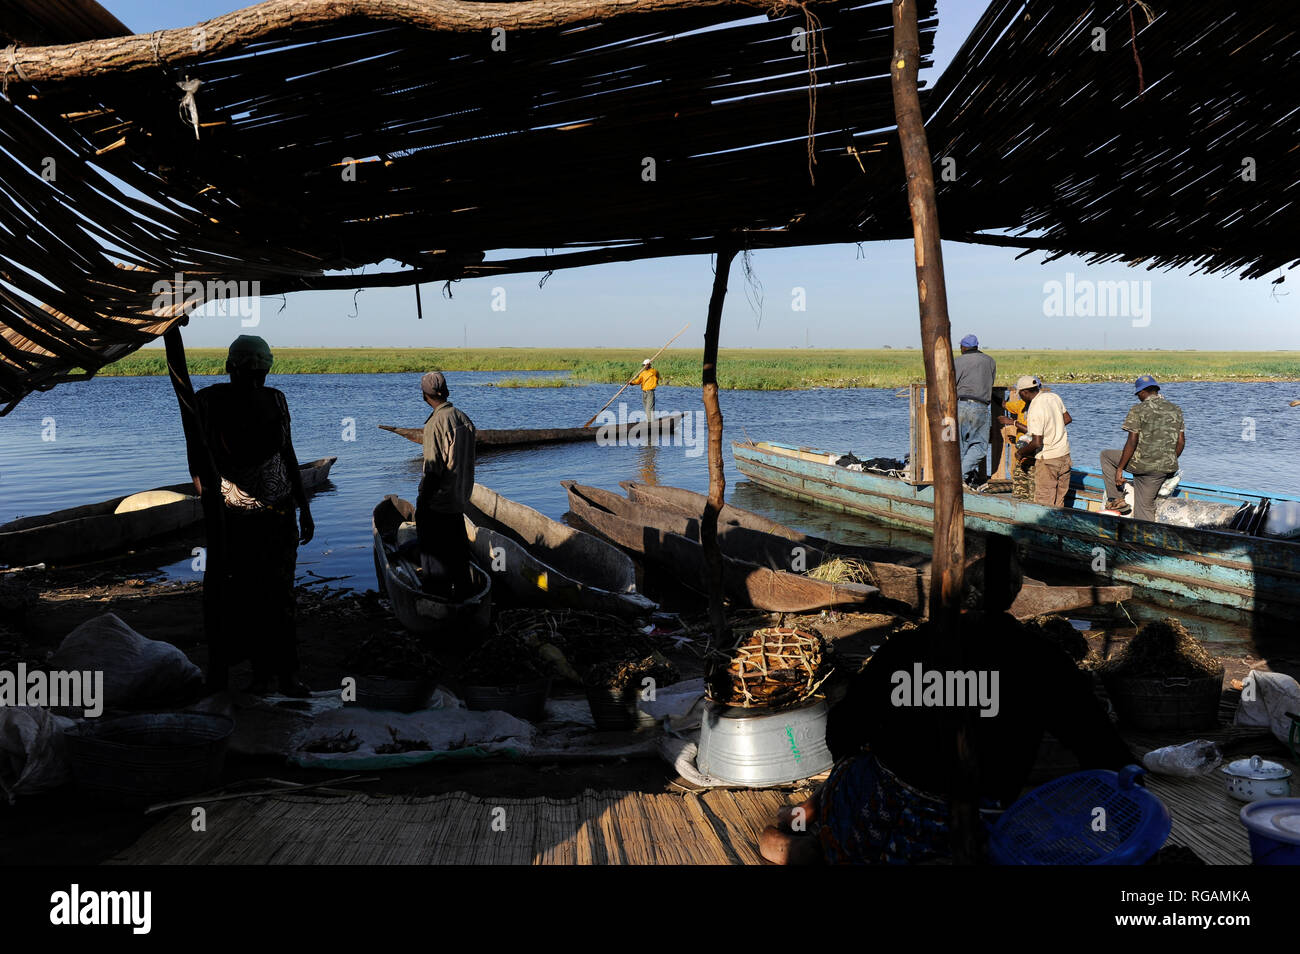 ZAMBIA Barotseland Mongu, Mulamba harbour at river Zambezi floodplain / SAMBIA Barotseland , Stadt Mongu , Hafen Mulamba in der Flutebene des Zambezi Fluss Stock Photo